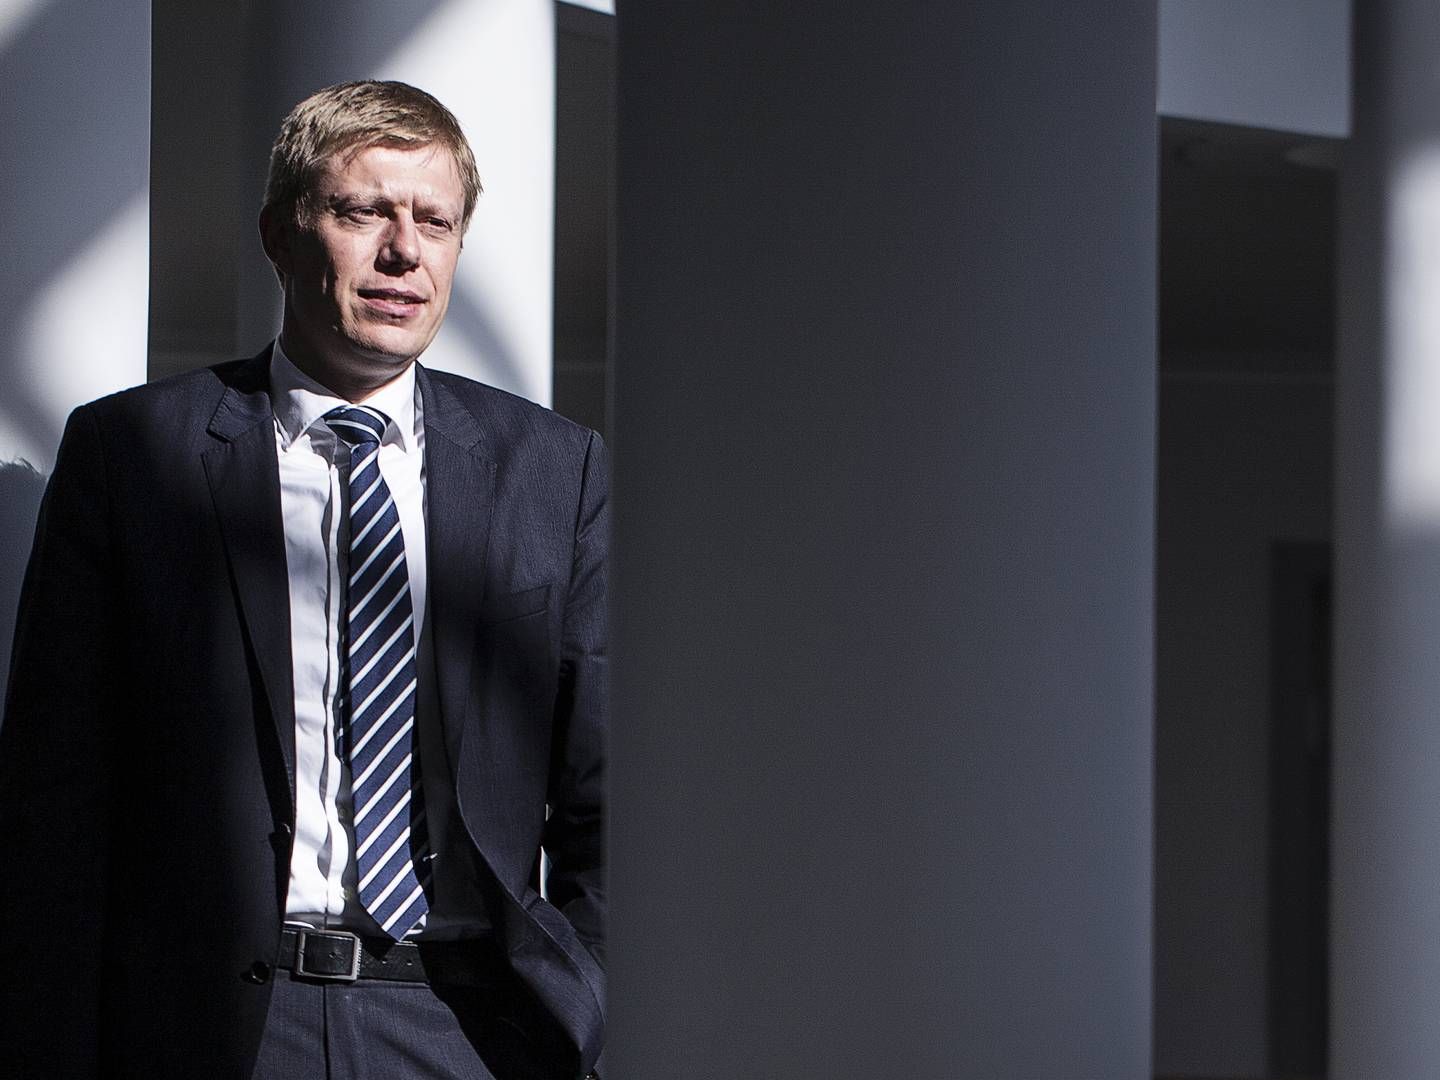 Finansdirektør Anders Lonning-Skovgaard har stået for regnskabsbøgerne i virksomhedne siden 2014, hvor han overtog posten fra Lene Skole. | Foto: Niels Hougaard/ERH